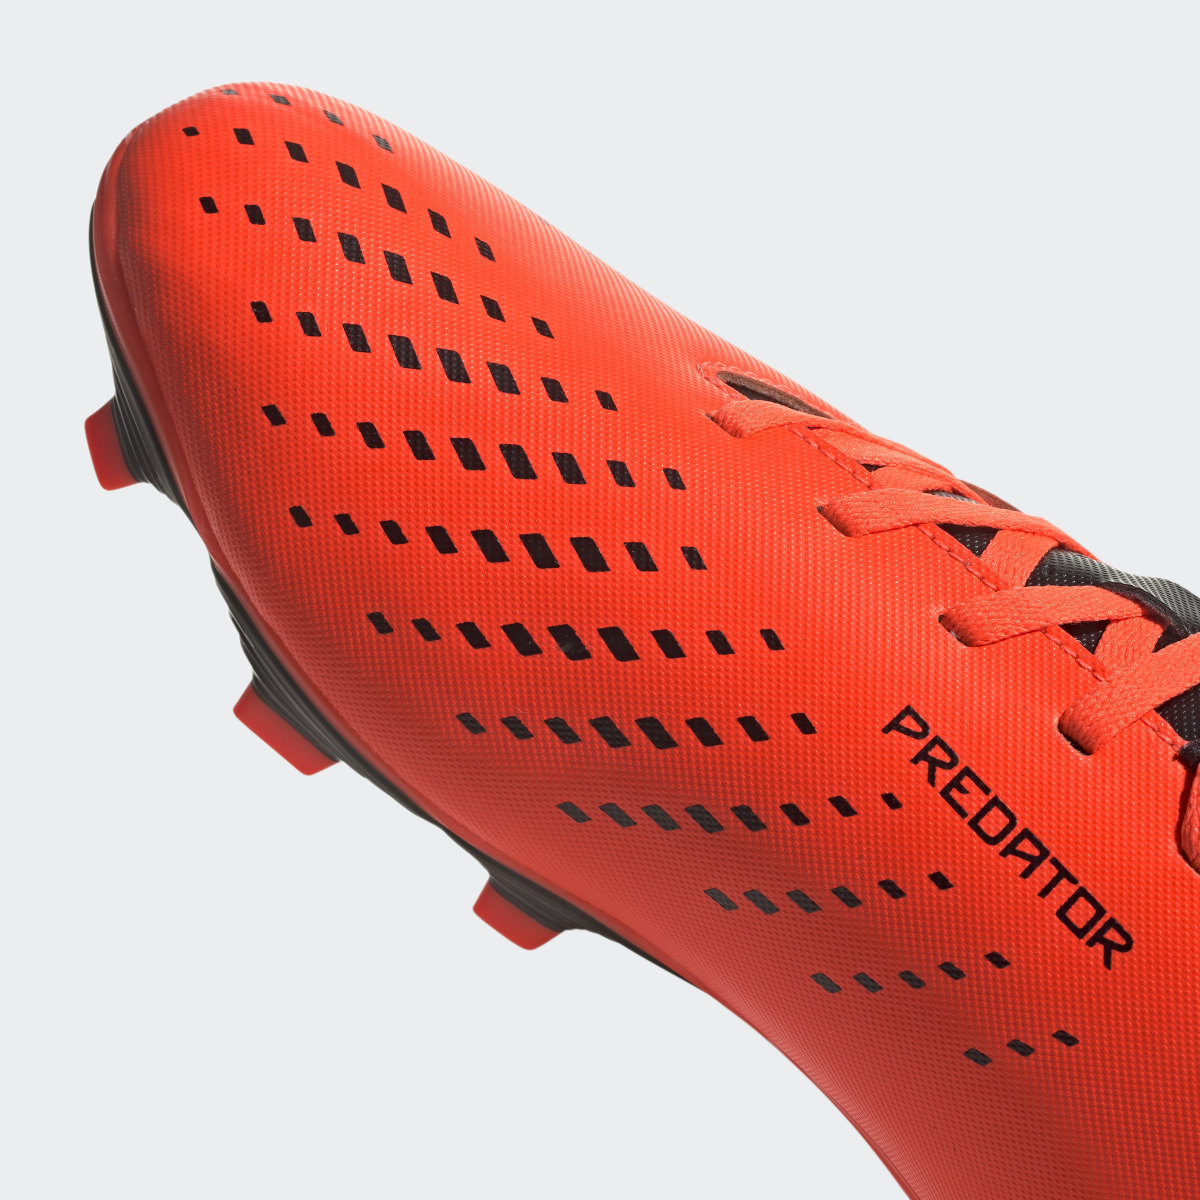 Adidas Scarpe da calcio Predator Accuracy.4 Flexible Ground. 9